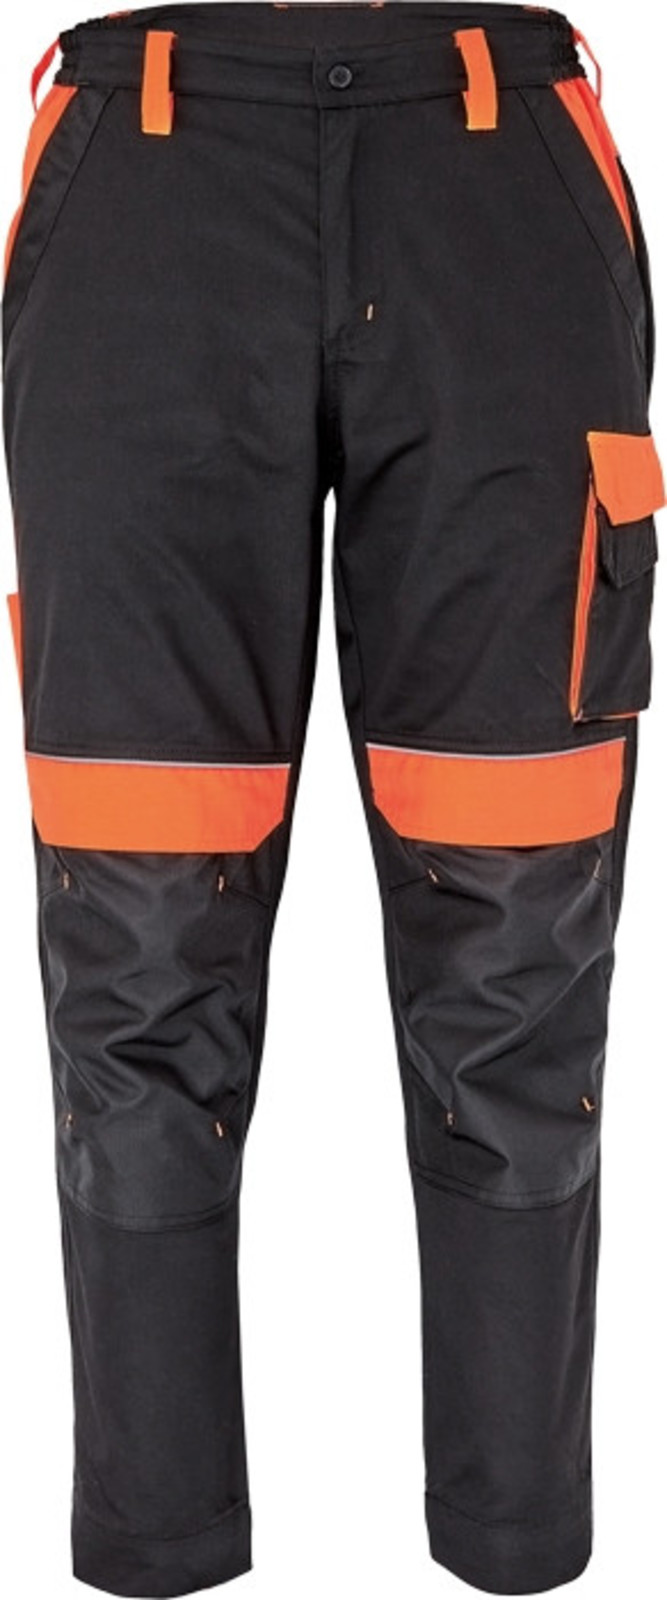 Pracovné nohavice Cerva Max Vivo pánske  - veľkosť: 48, farba: čierna/oranžová